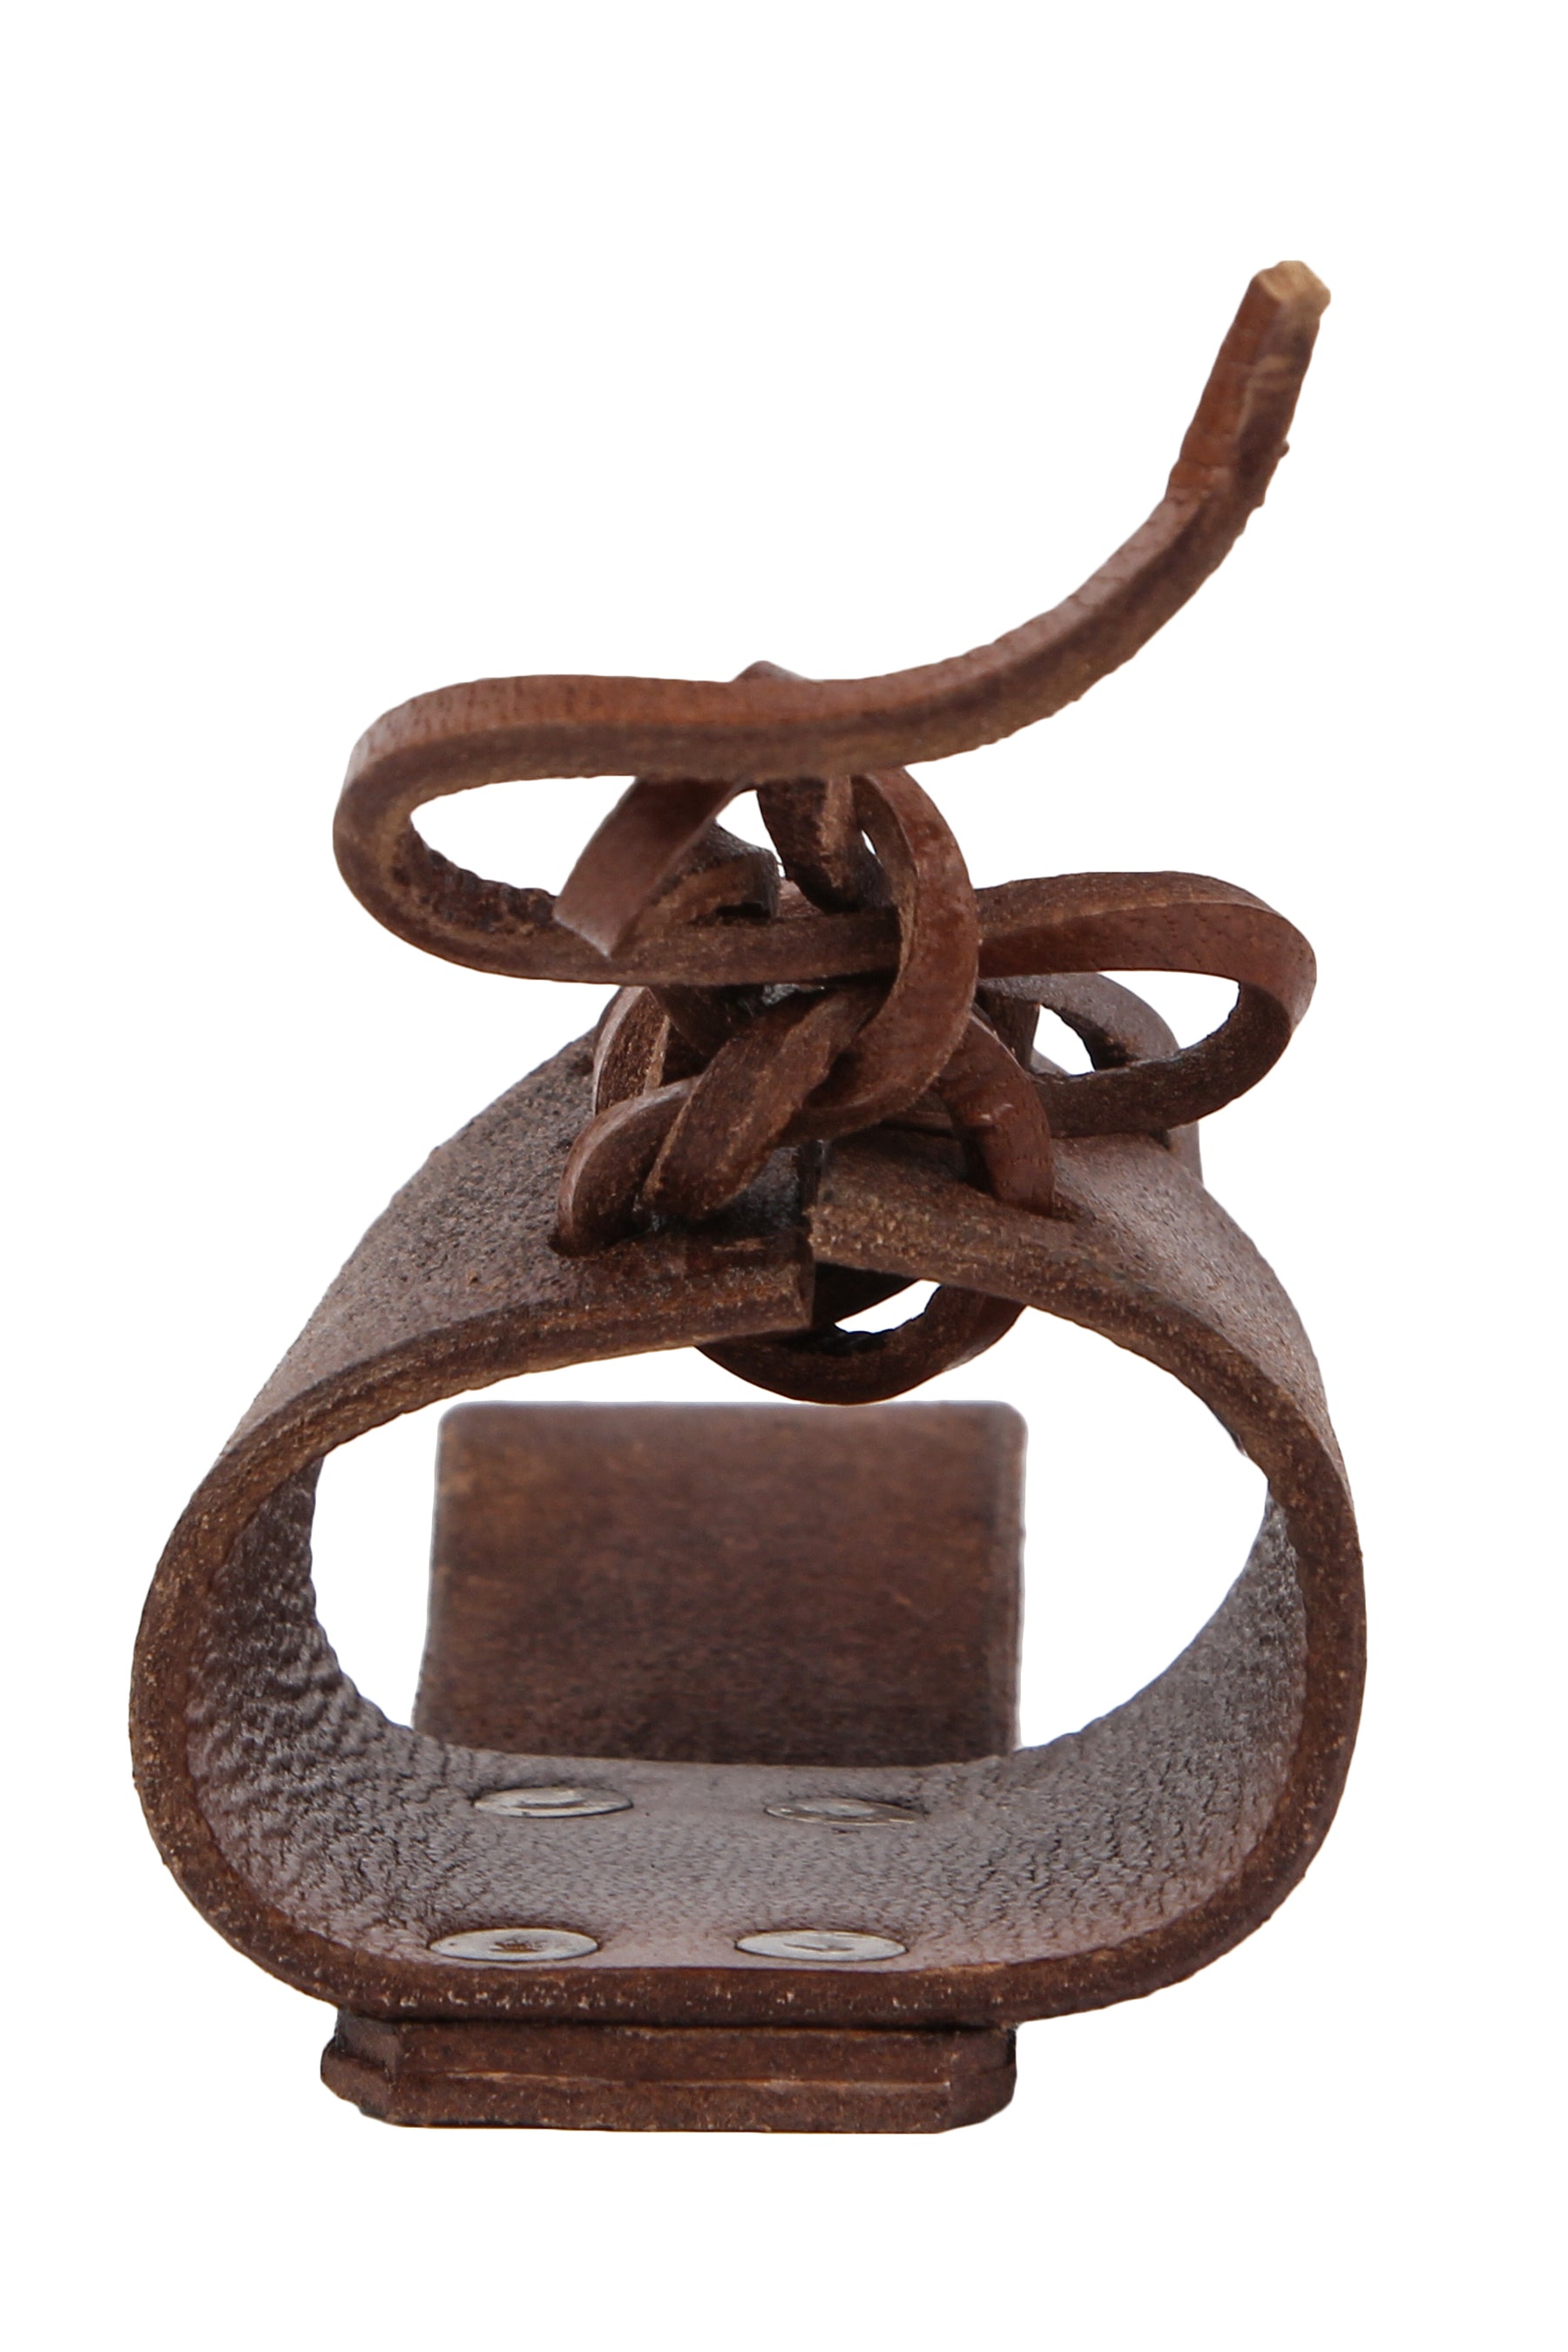 Horn holder for the belt, small